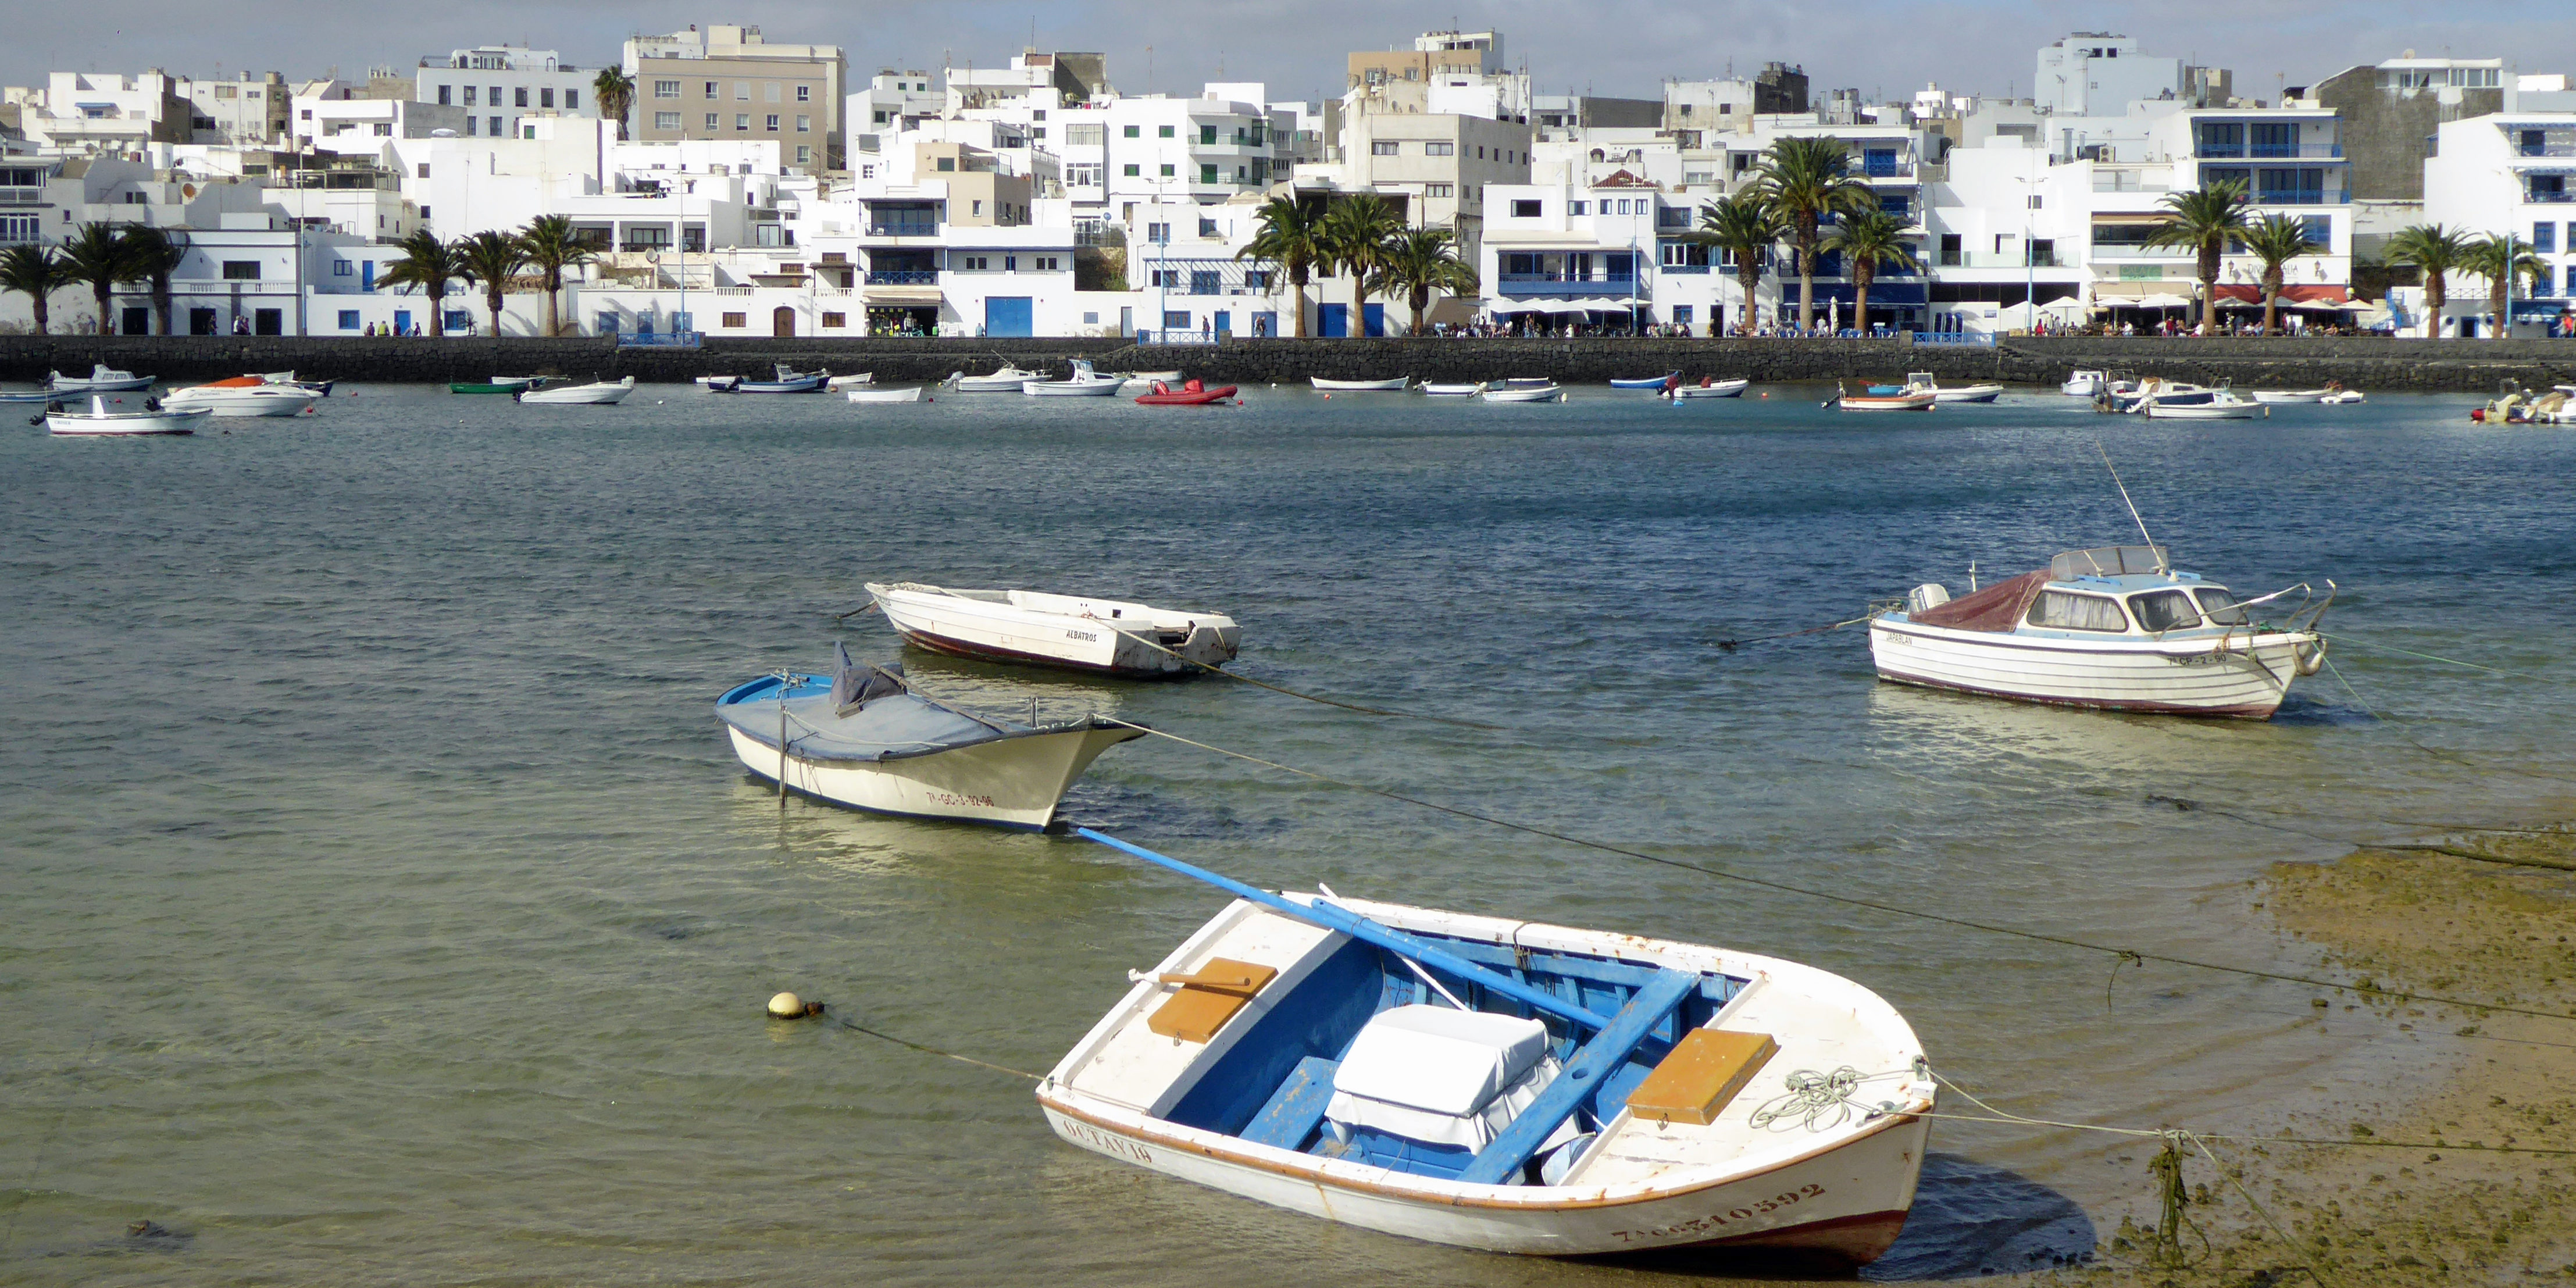 AIDA ermöglicht wieder individuelle Landgänge - wie hier auf Lanzarote. (Foto: Steffen Gaux)